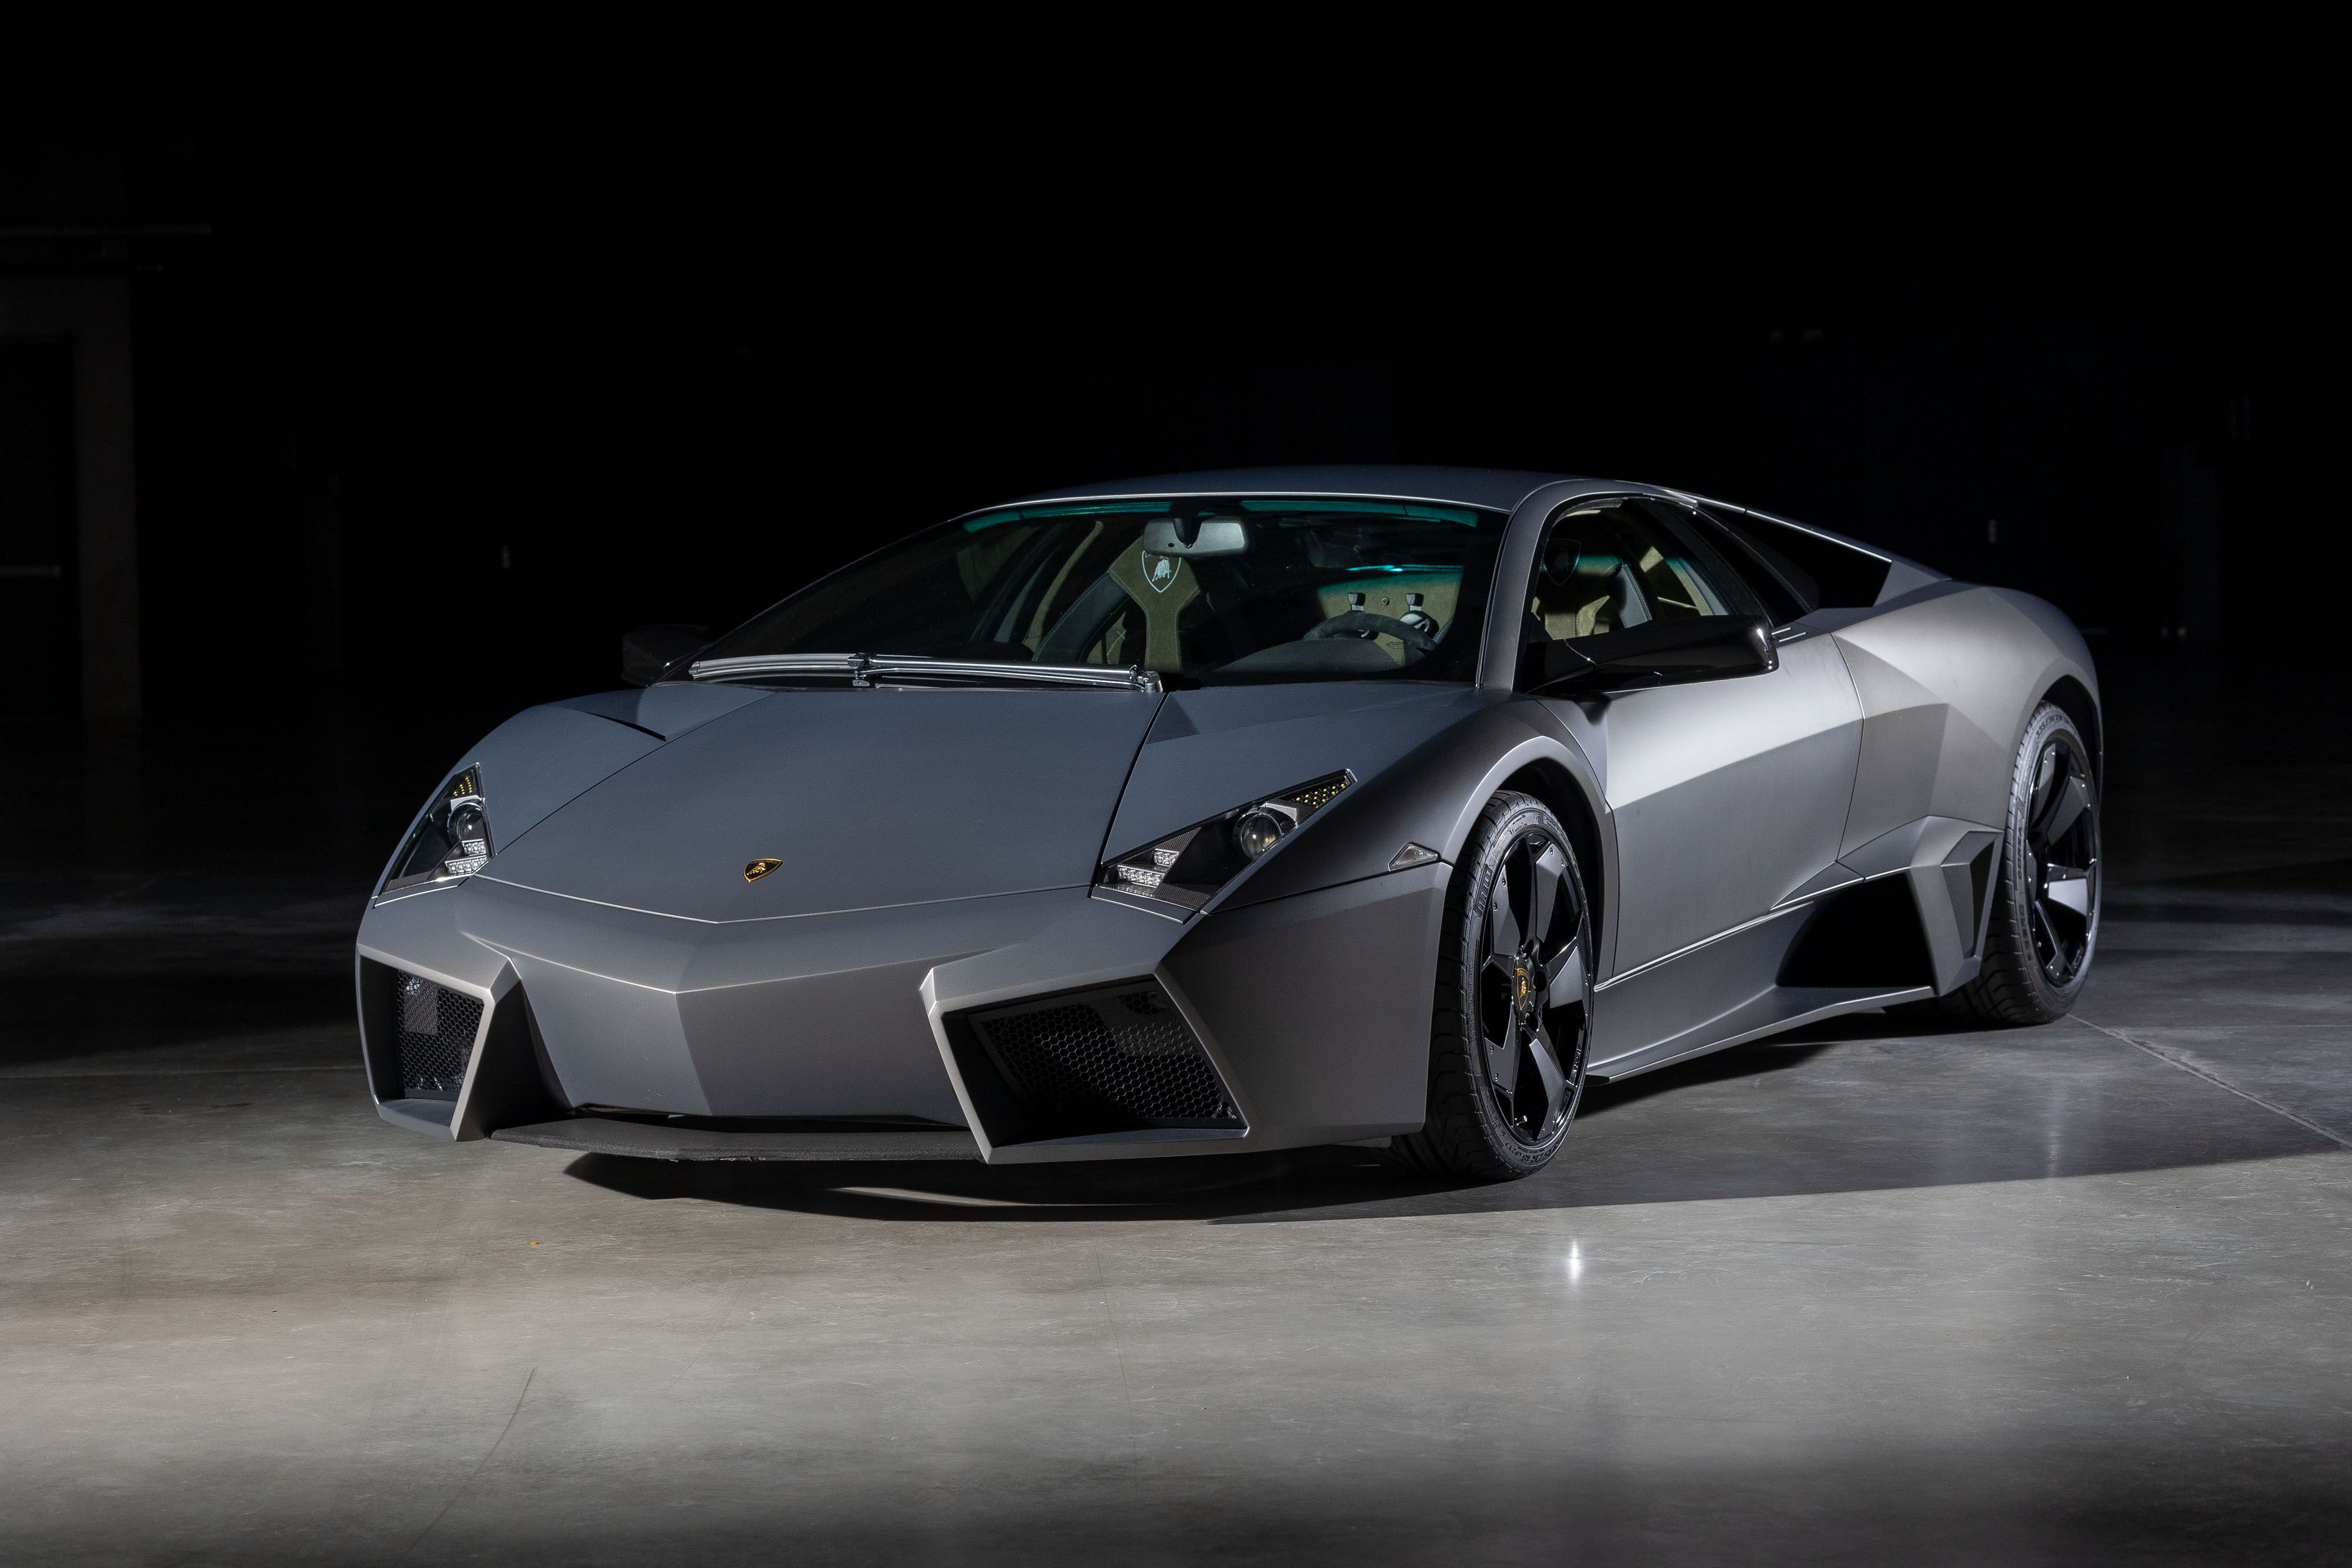 Lamborghini Reventón for Sale - 13th of 20, Driven 68 Miles